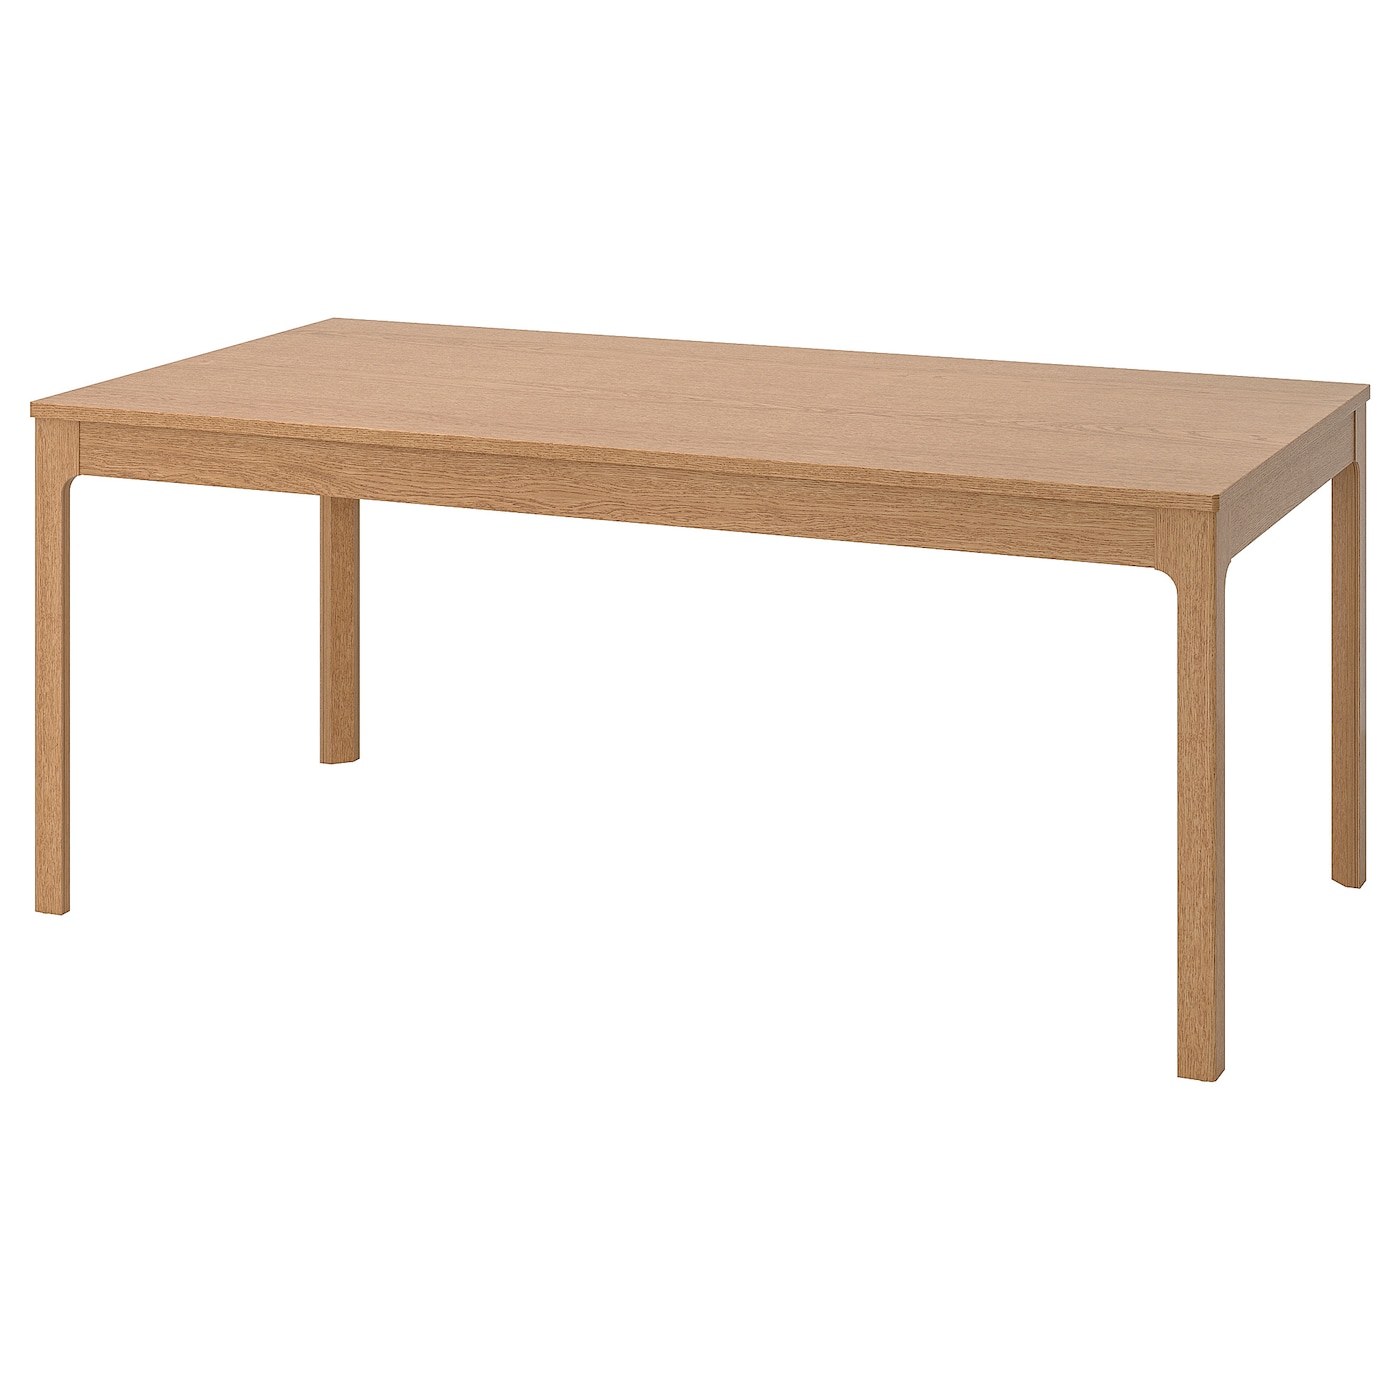 Раздвижной обеденный стол - IKEA EKEDALEN, 180/240х90 см, дуб, ЭКЕДАЛЕН ИКЕА